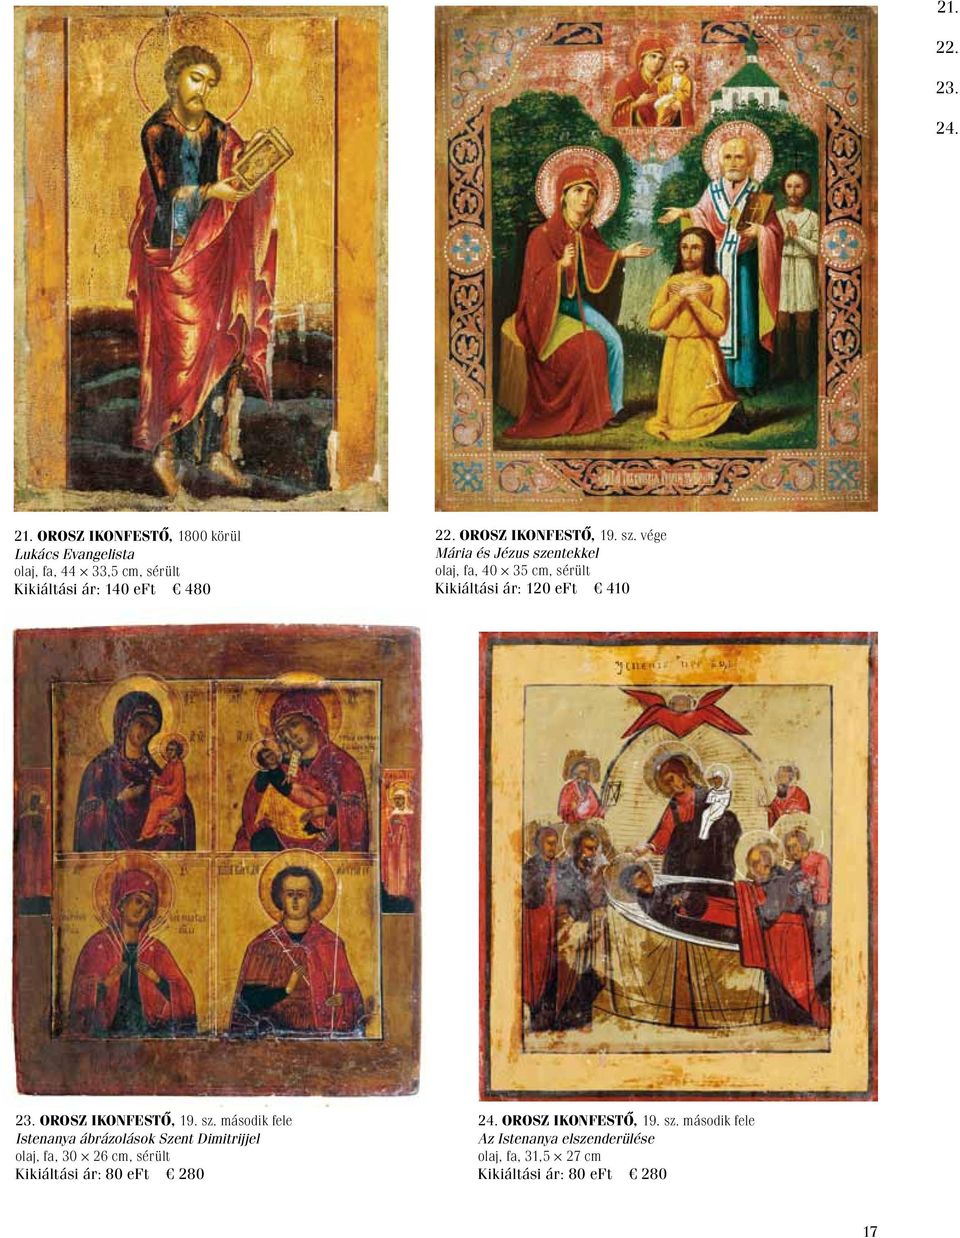 Orosz ikonfestő, 19. sz. vége Mária és Jézus szentekkel olaj, fa, 40 35 cm, sérült Kikiáltási ár: 120 eft 410 23.